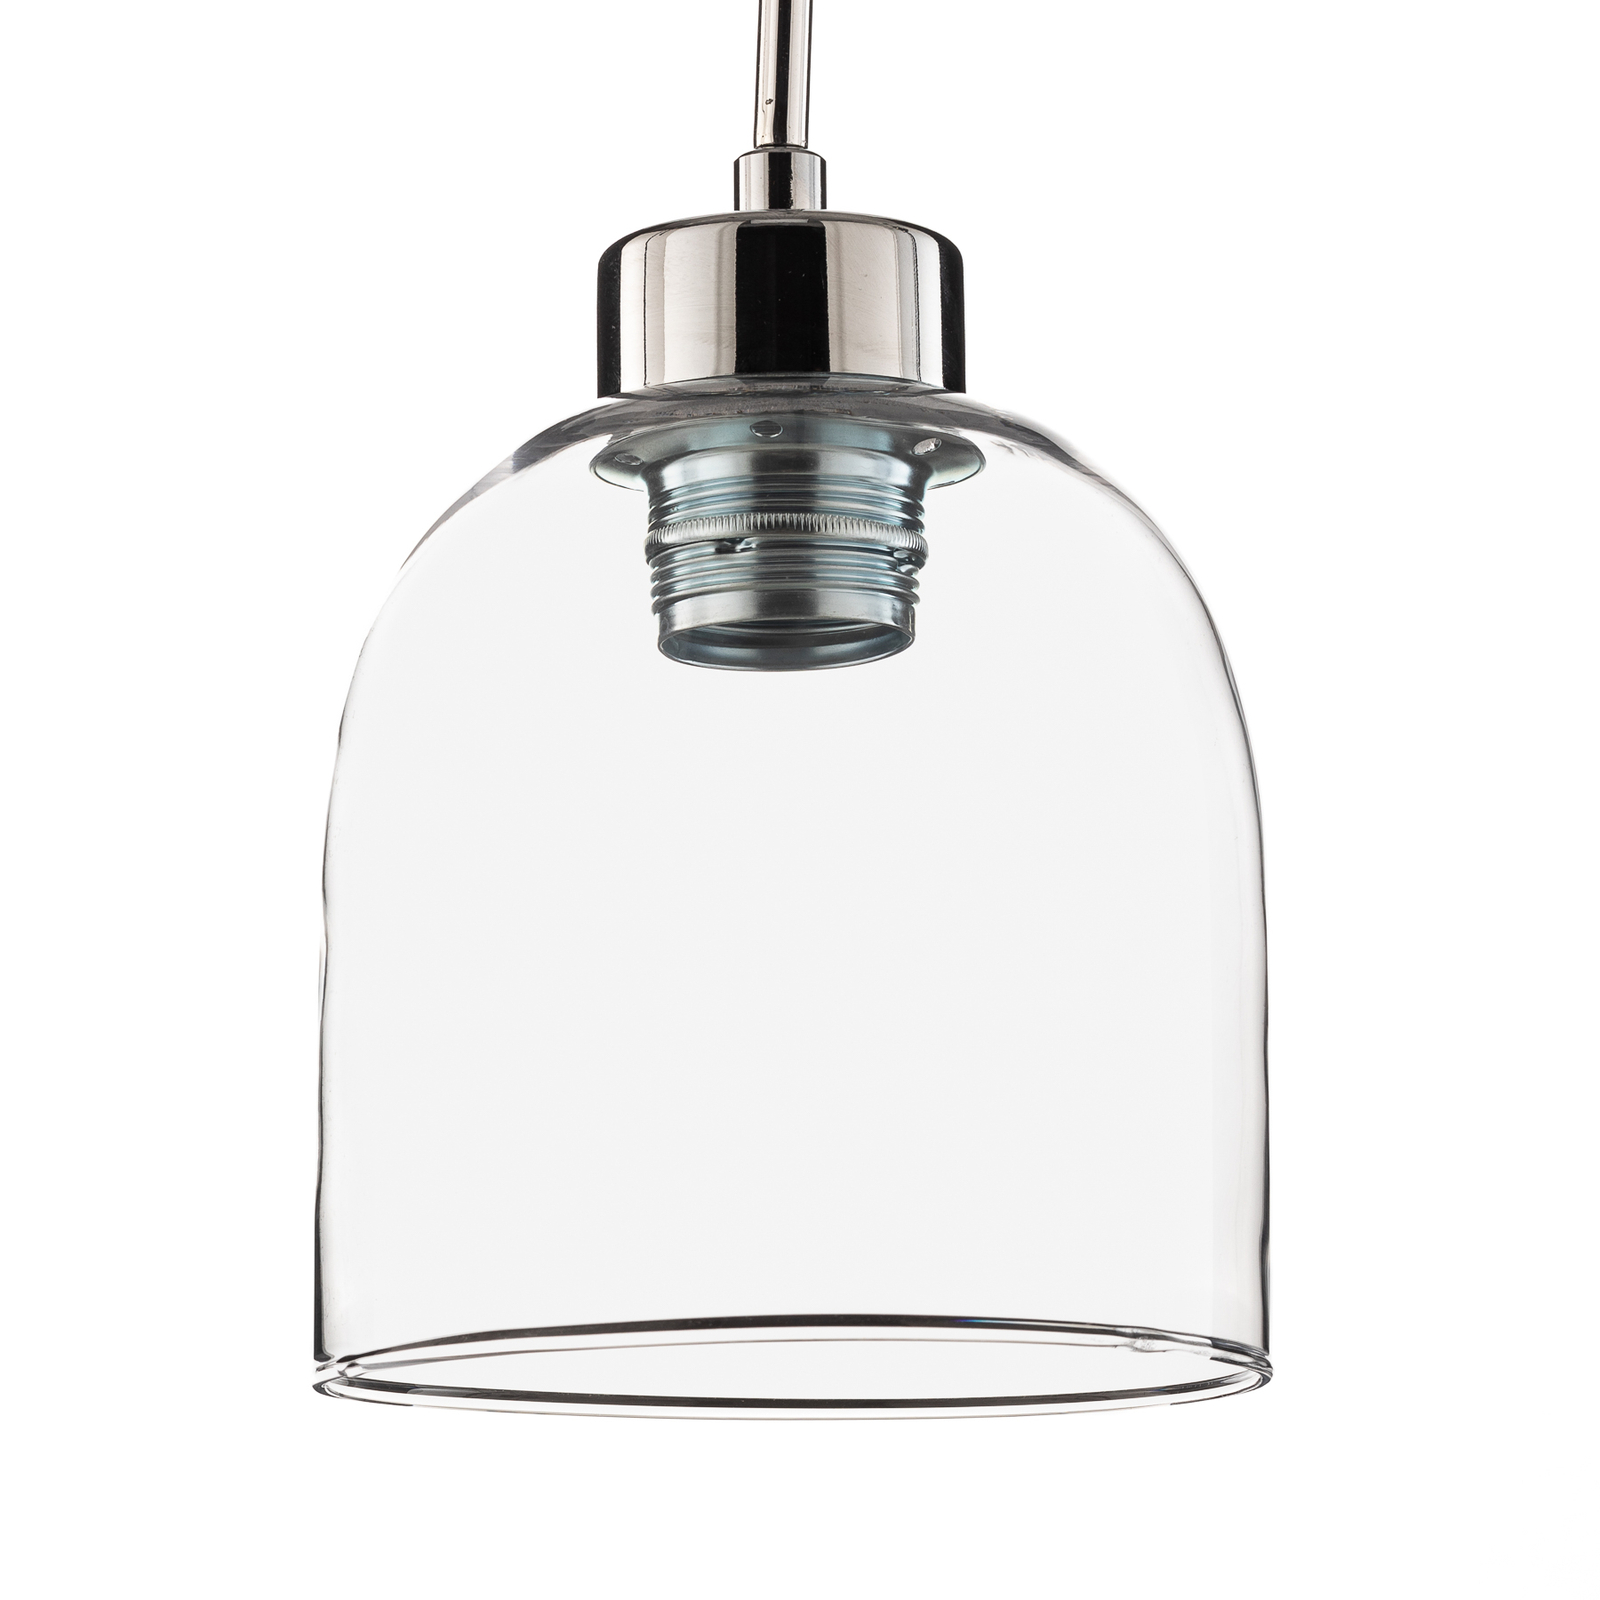 Hanglamp Fill, helder/chroom, 1-lamp